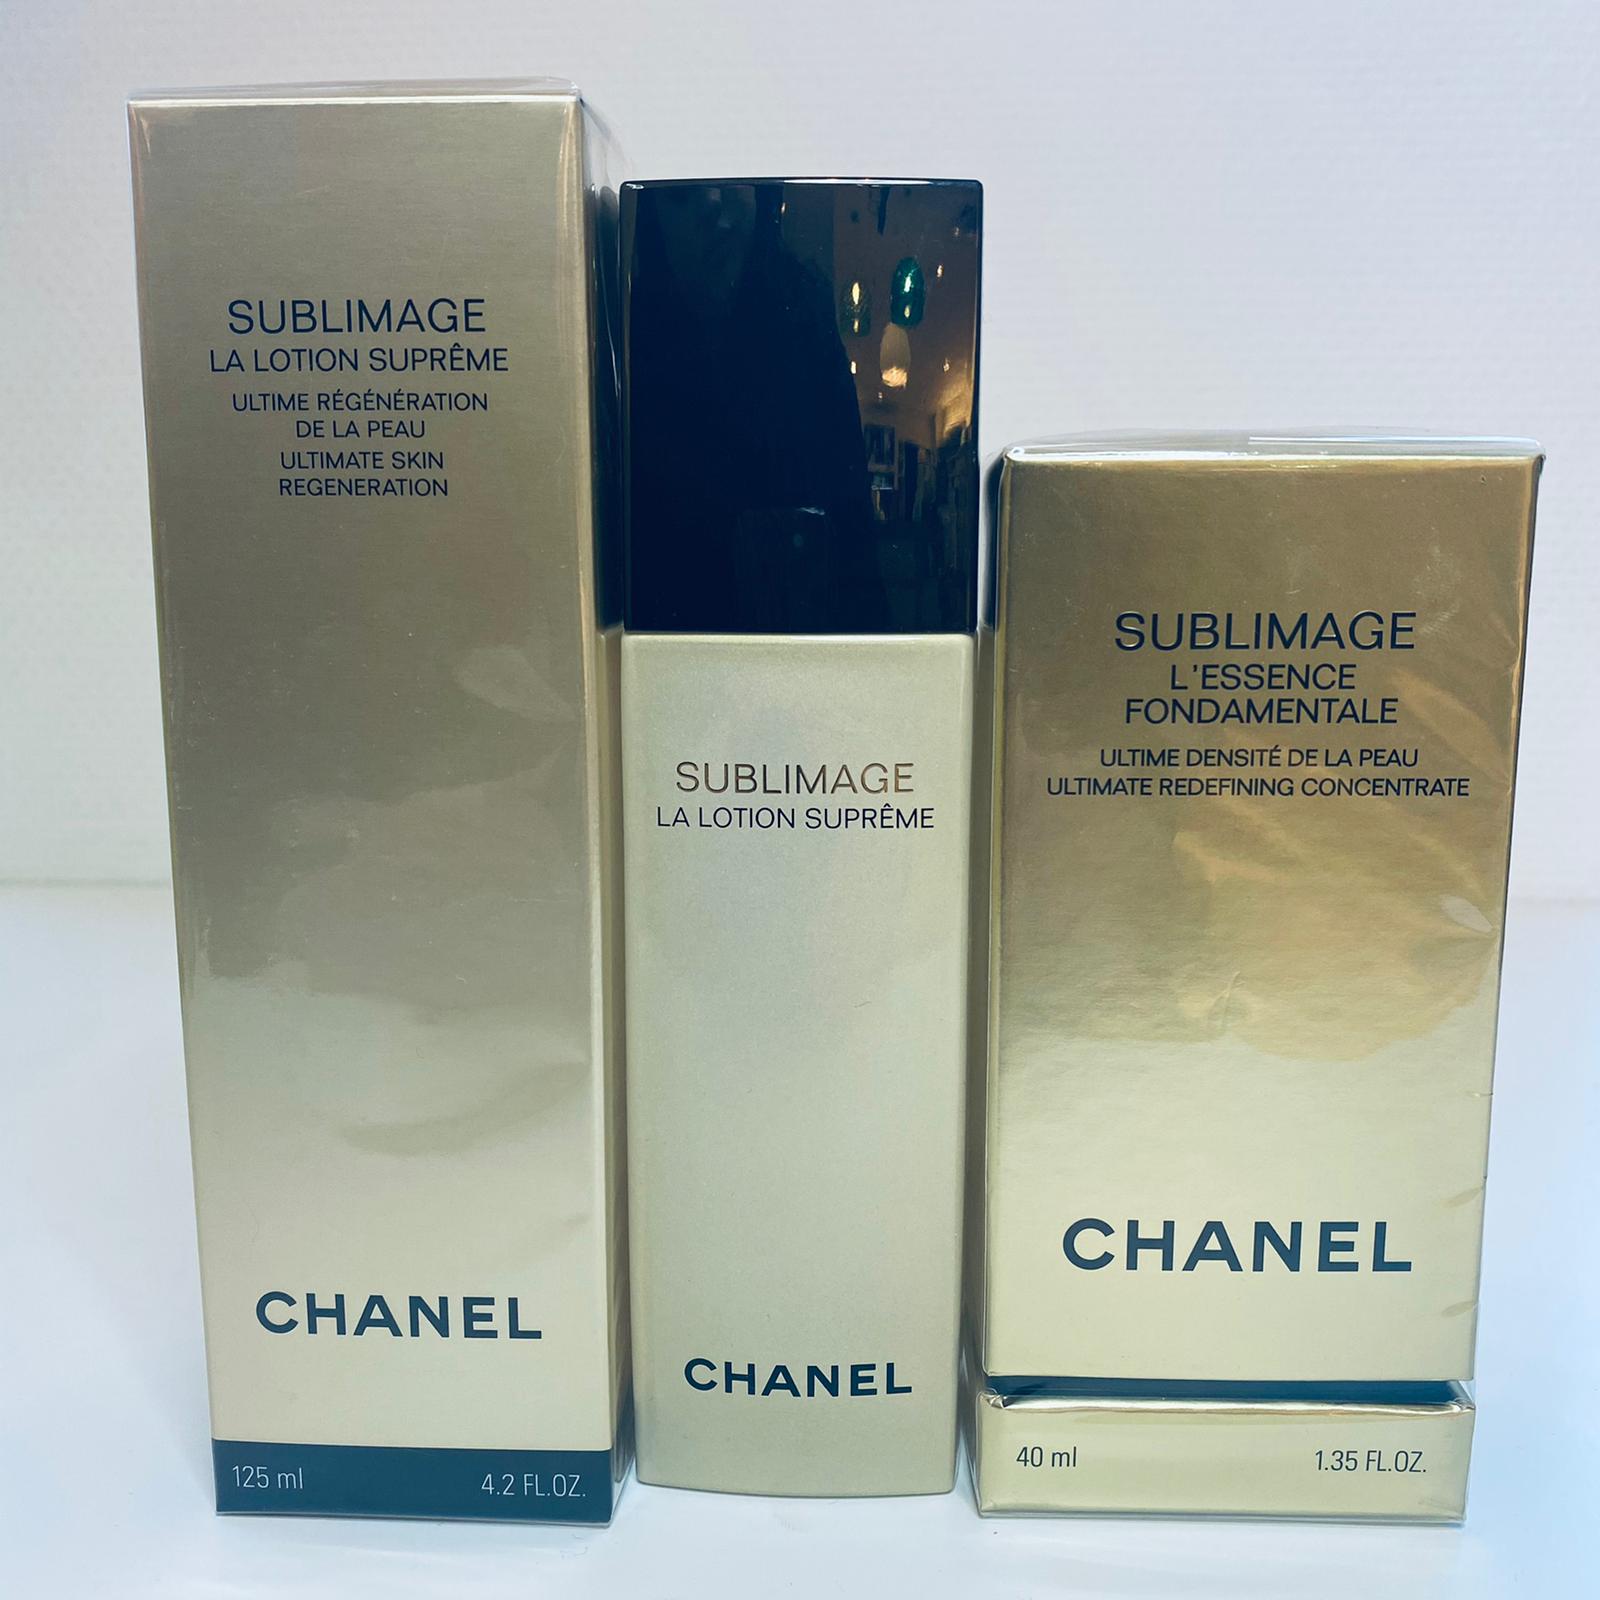 Chanel sublimage L'essence 40 ml